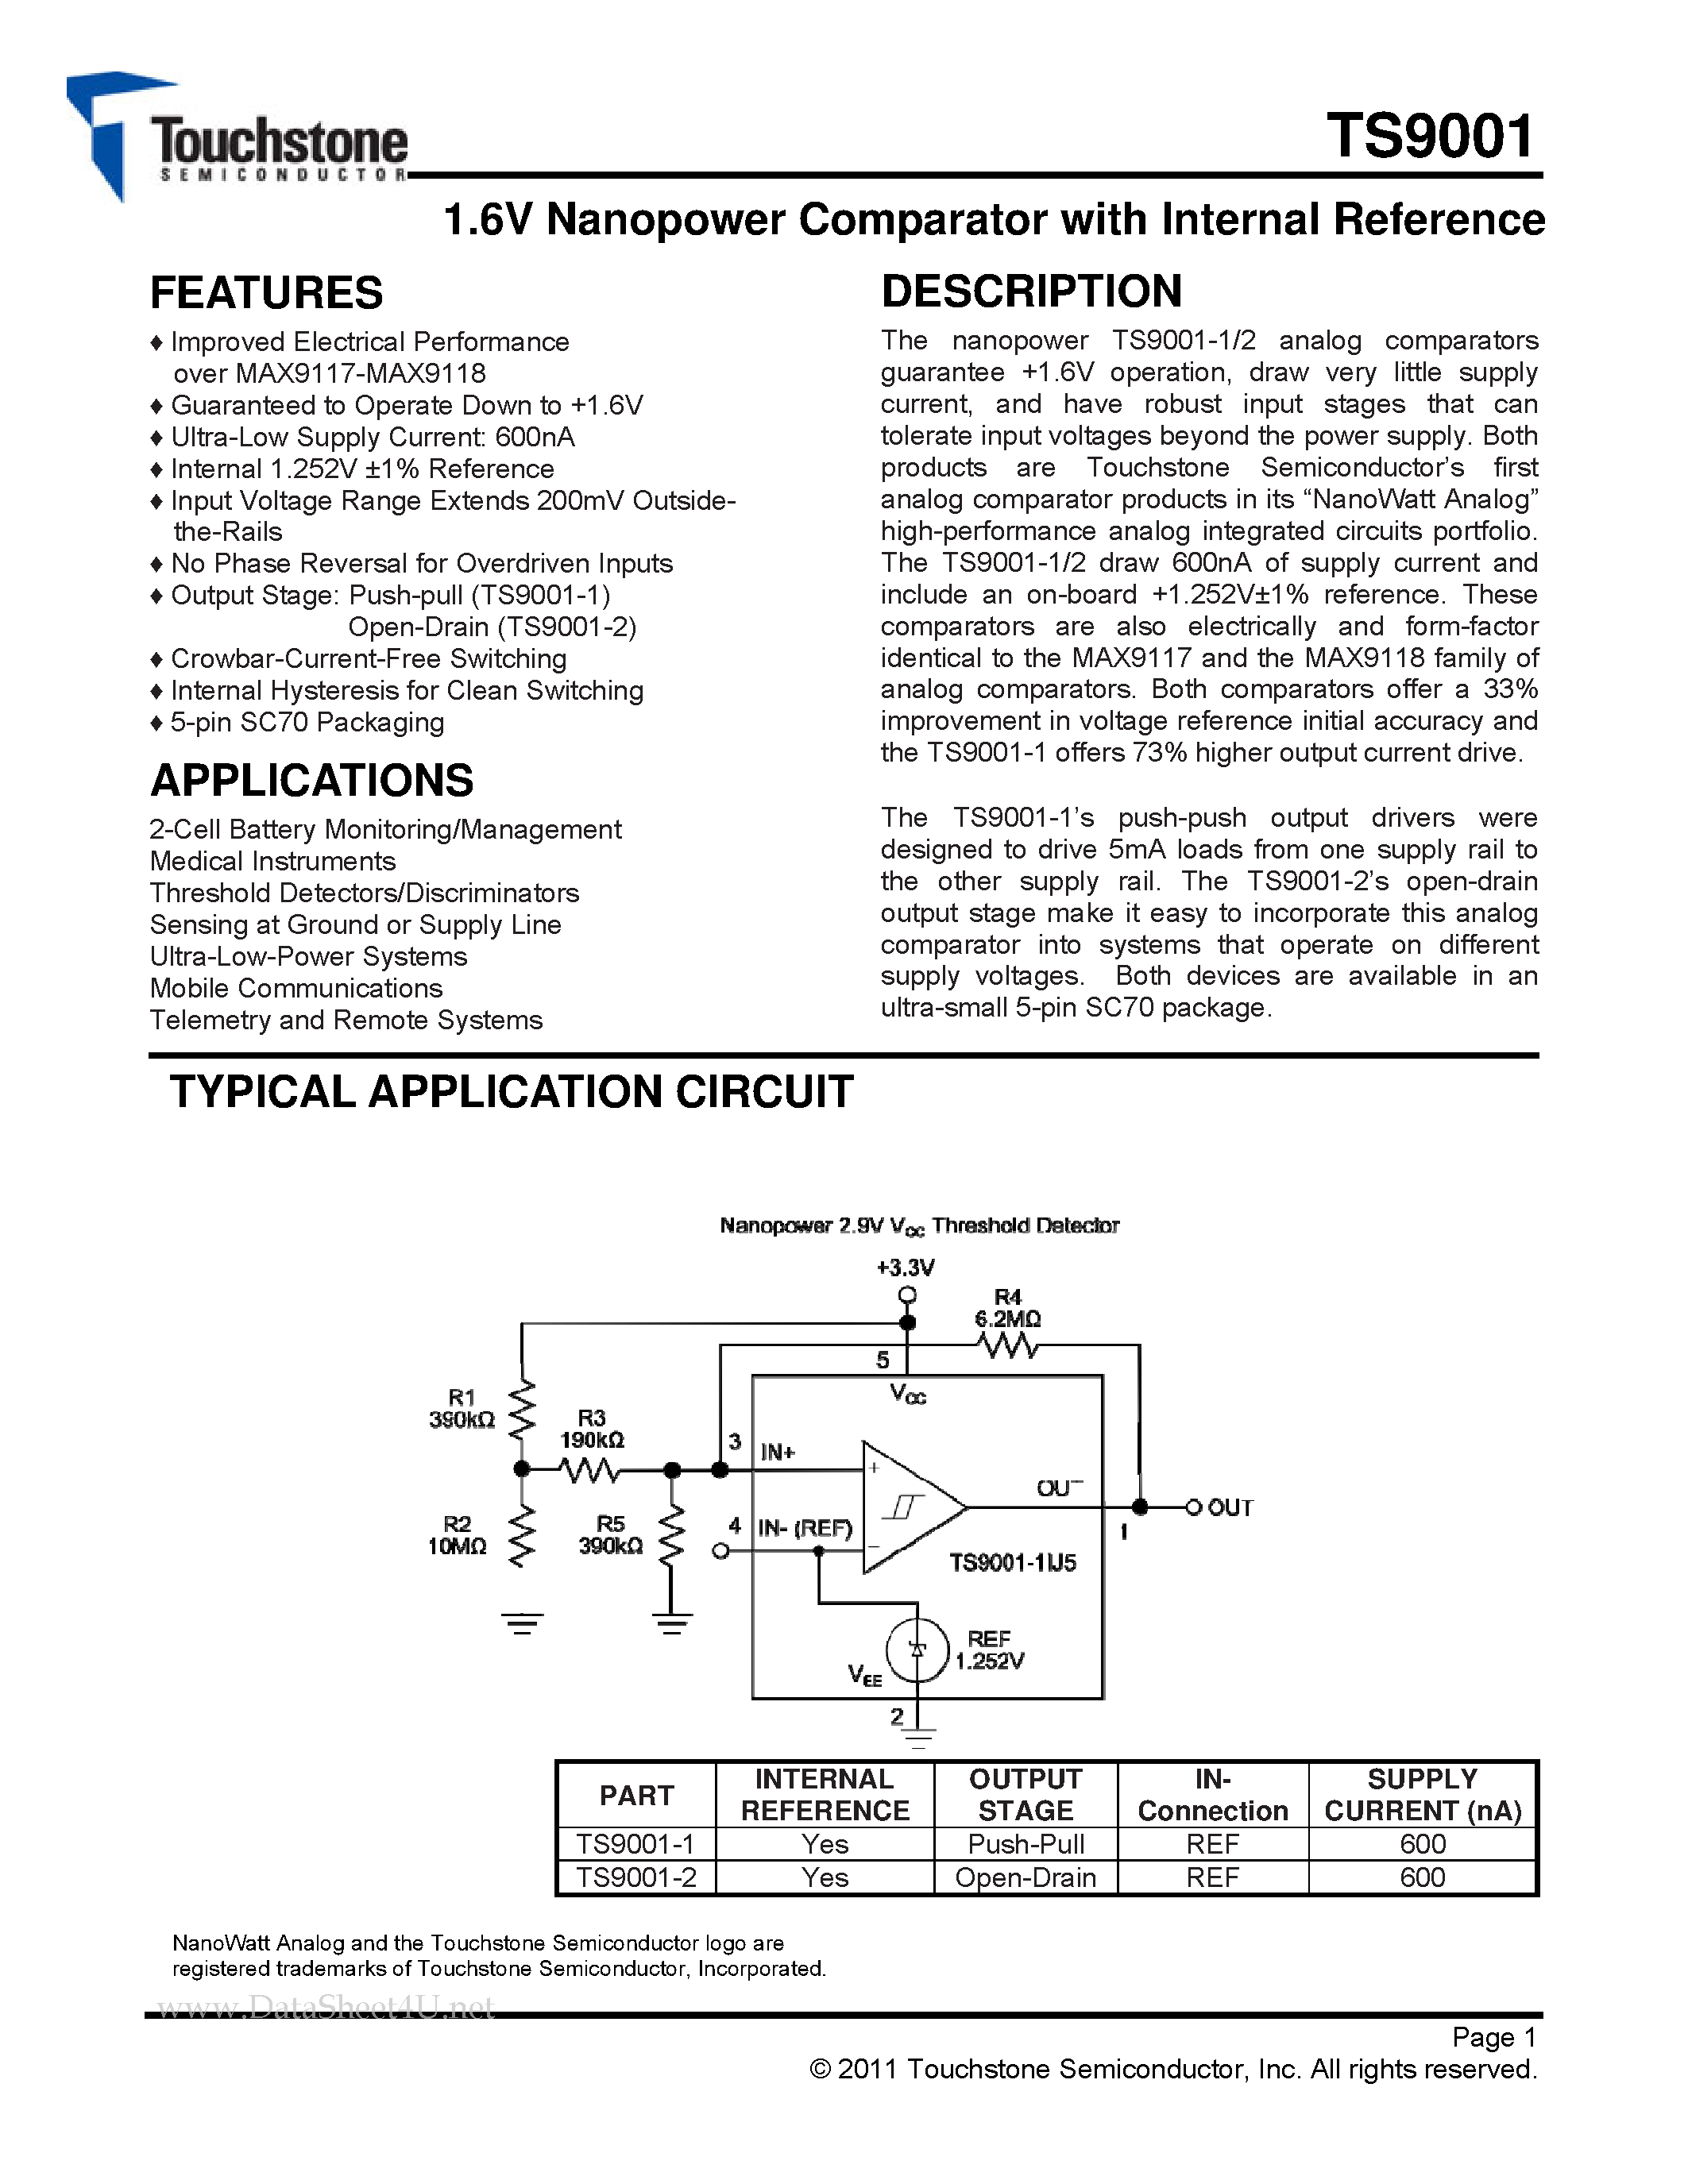 Даташит TS9001 - 1.6V Nanopower Comparator страница 1